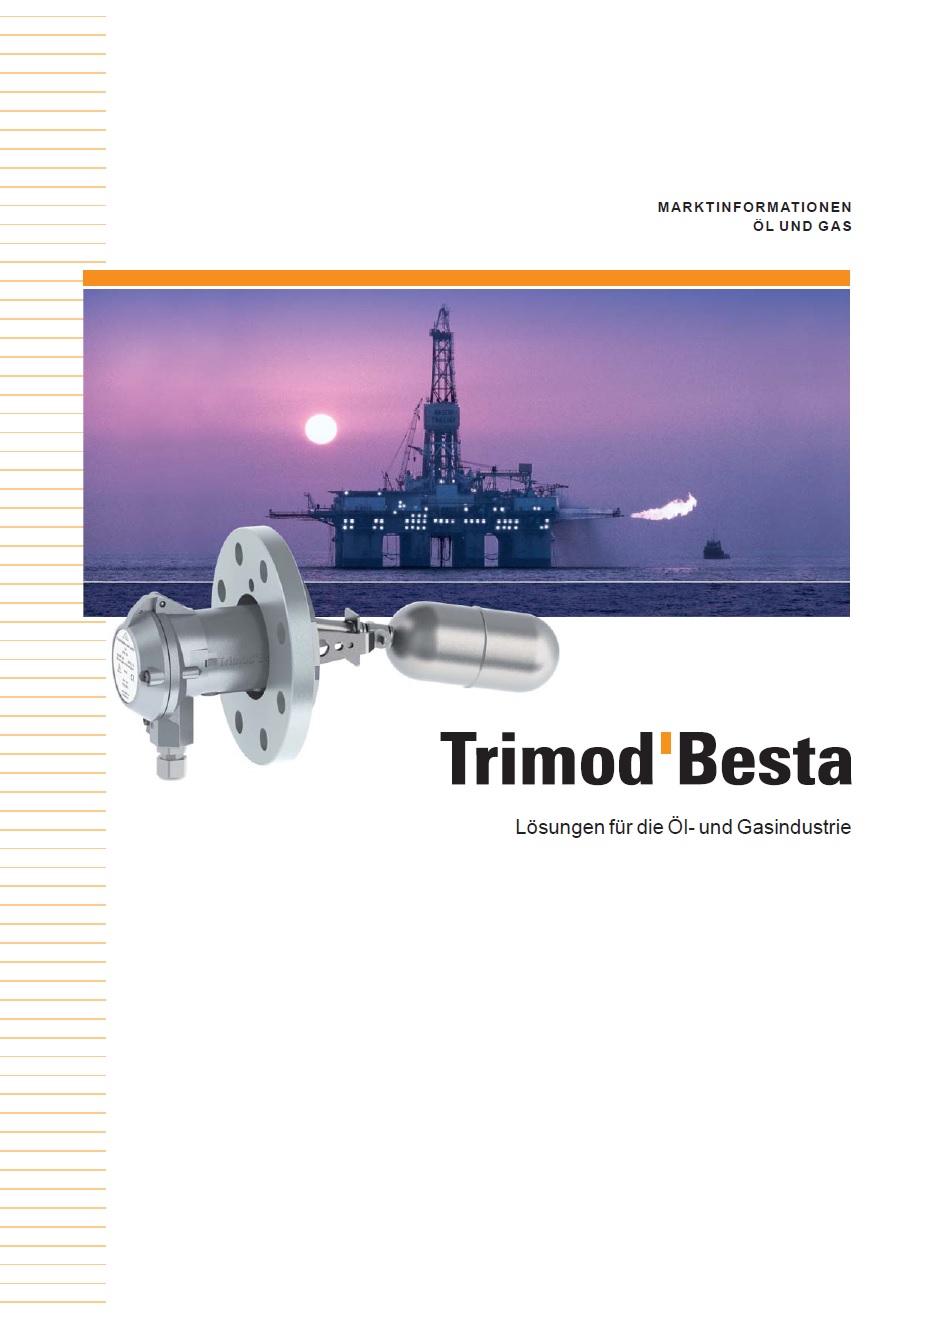 Besta Trimod für die Öl & Gasindustrie